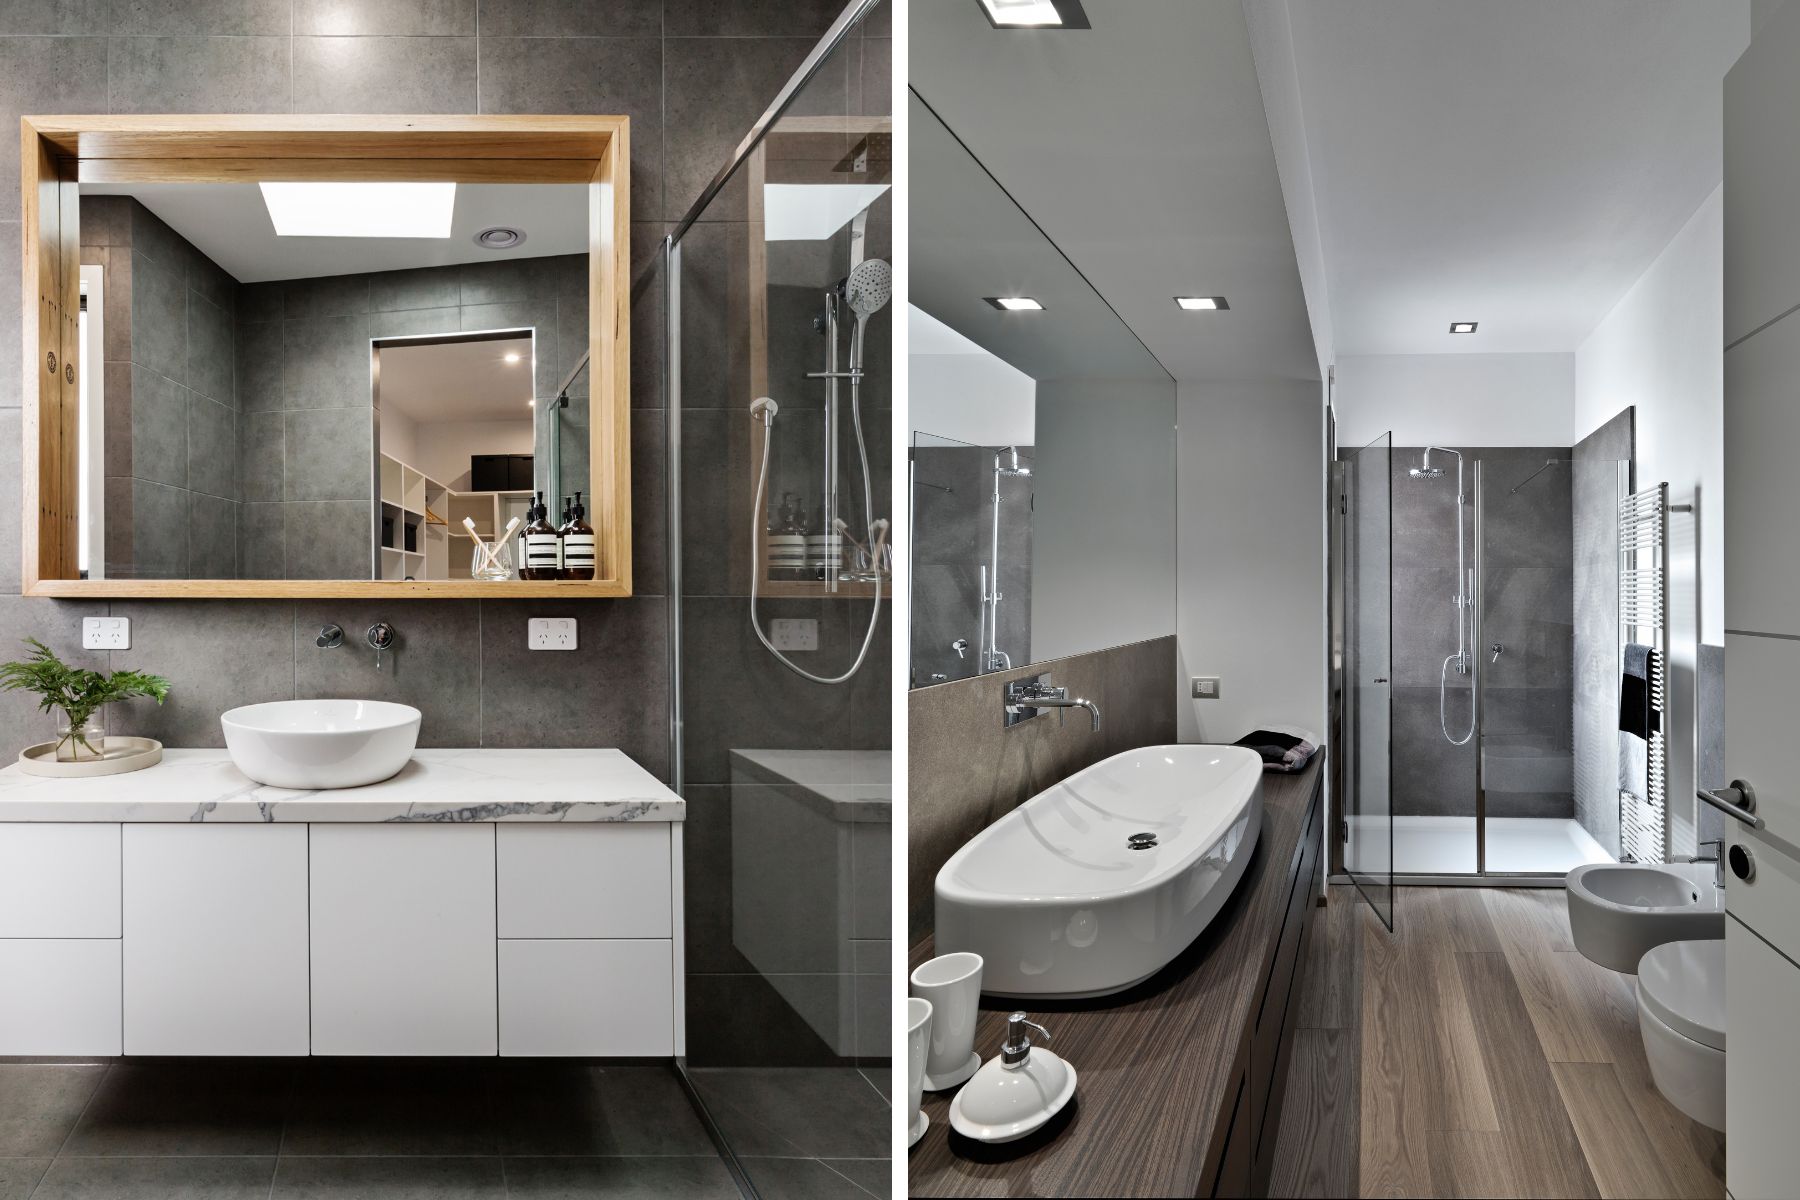 hiq-interior-design-bathroom.jpg